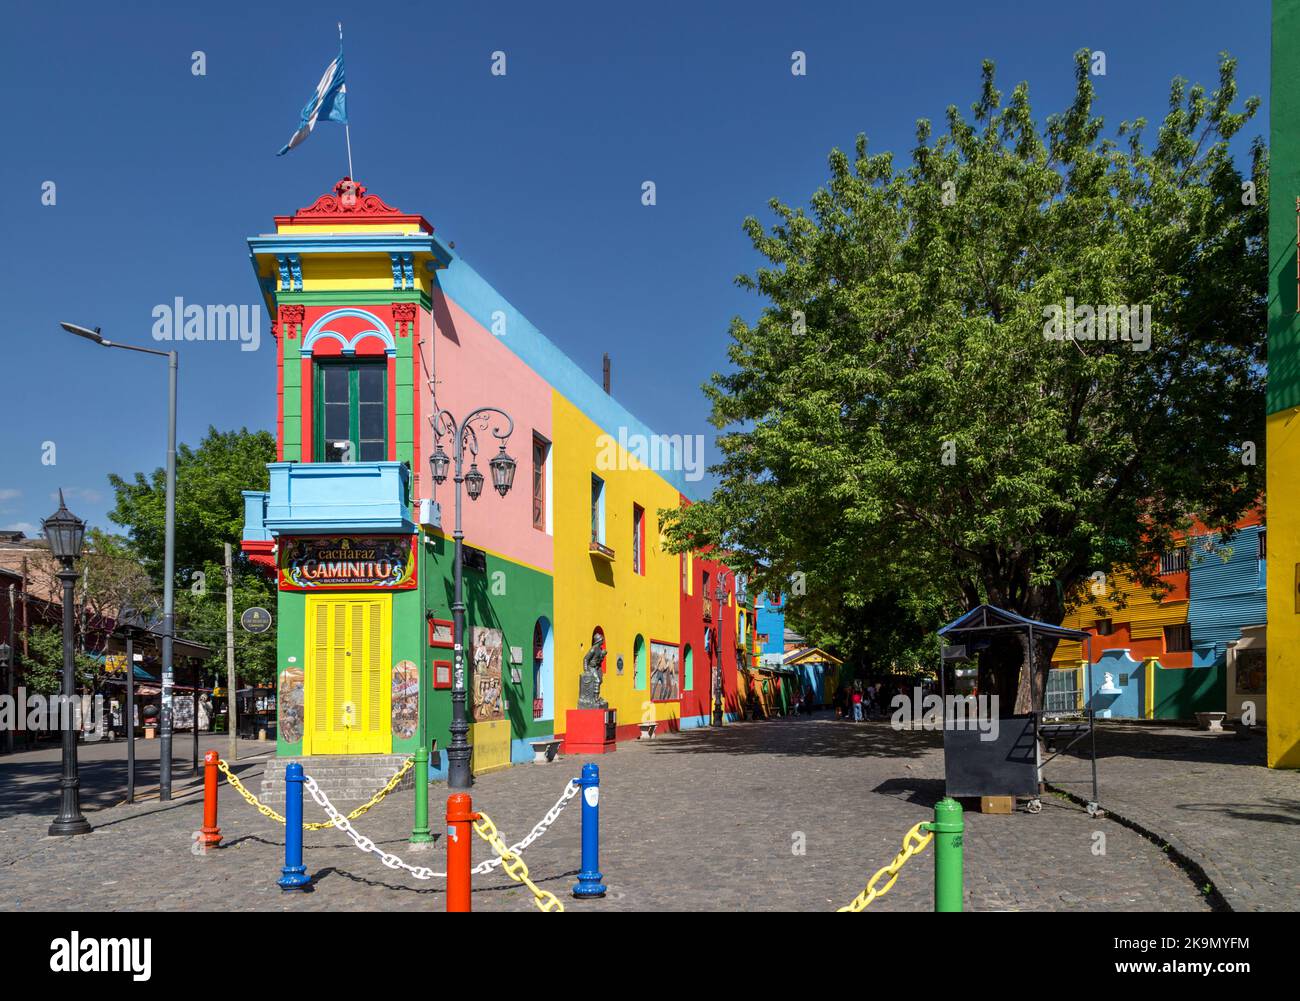 Caminito, La Boca, Buenos Aires Foto Stock